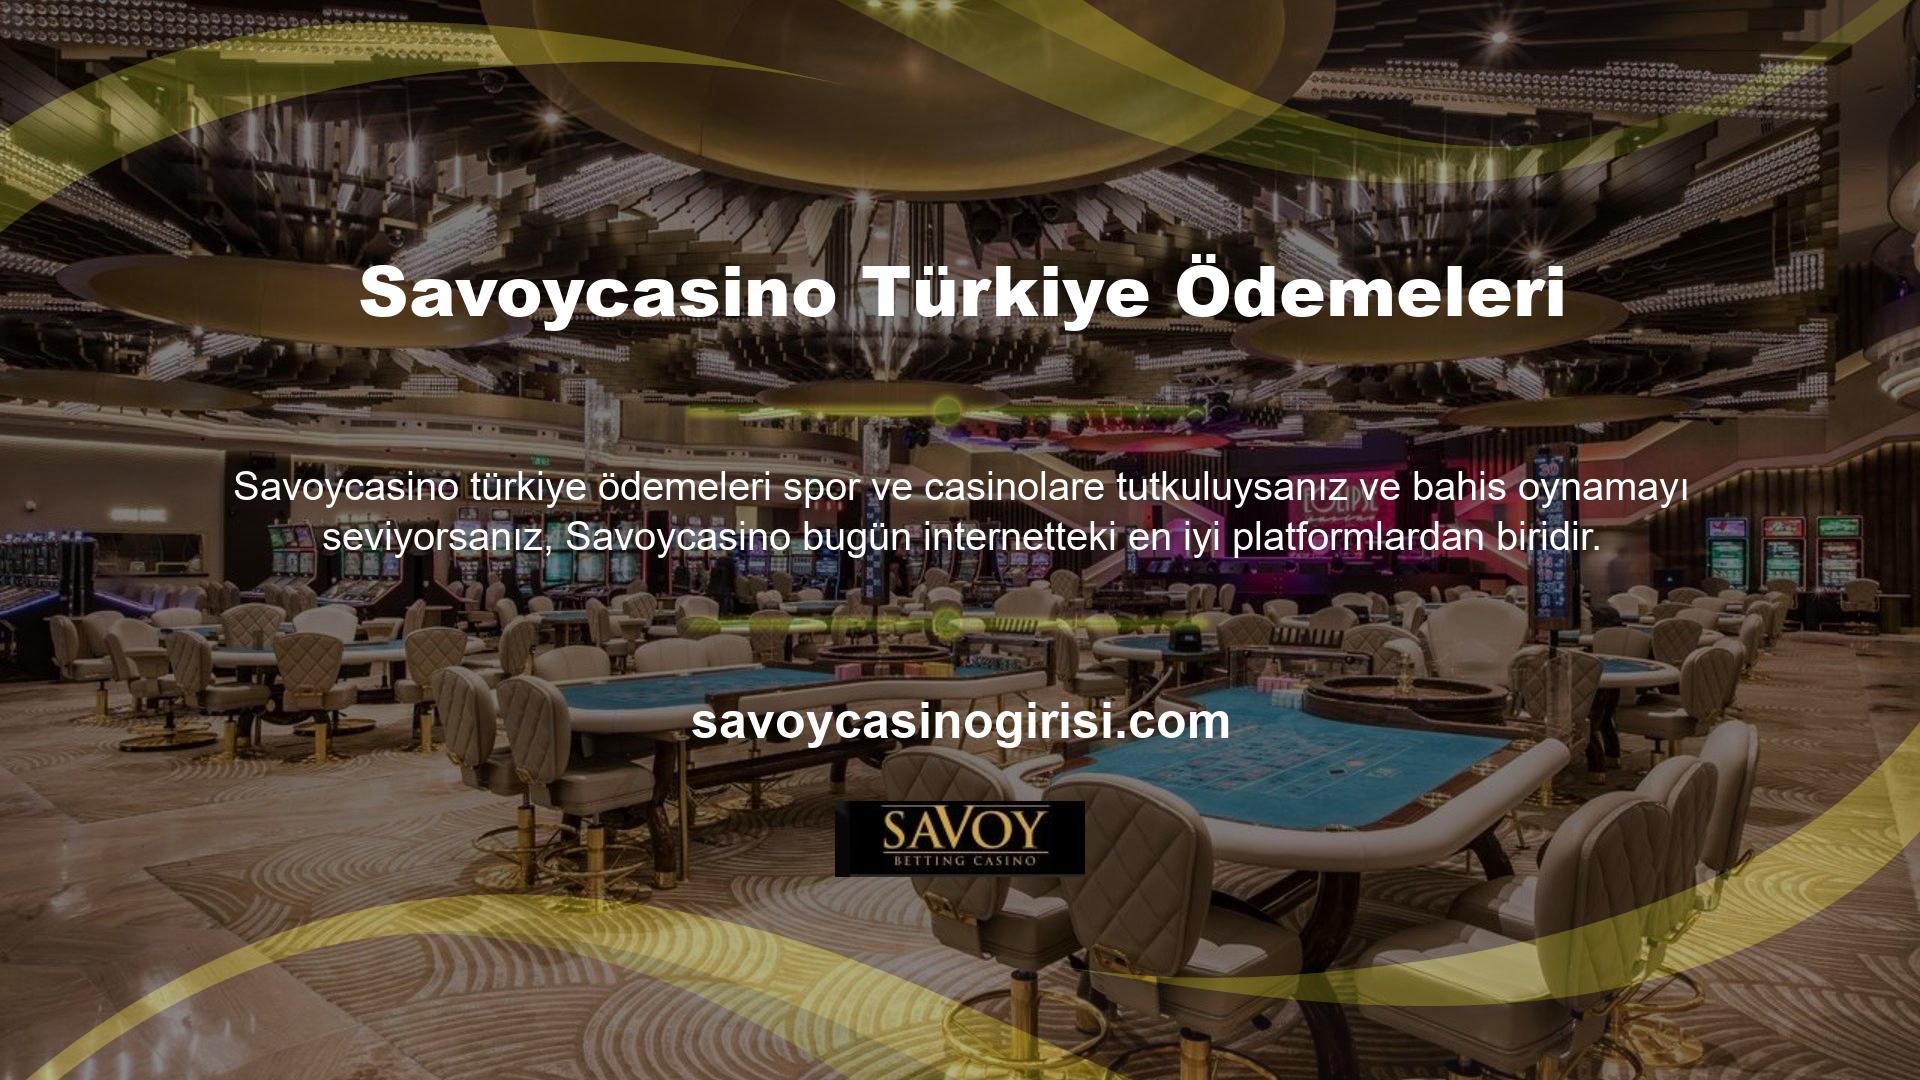 Savoycasino, spor, slot, oyunlar ve diğer birçok özellik ile çok çeşitli casino oyunları sunar